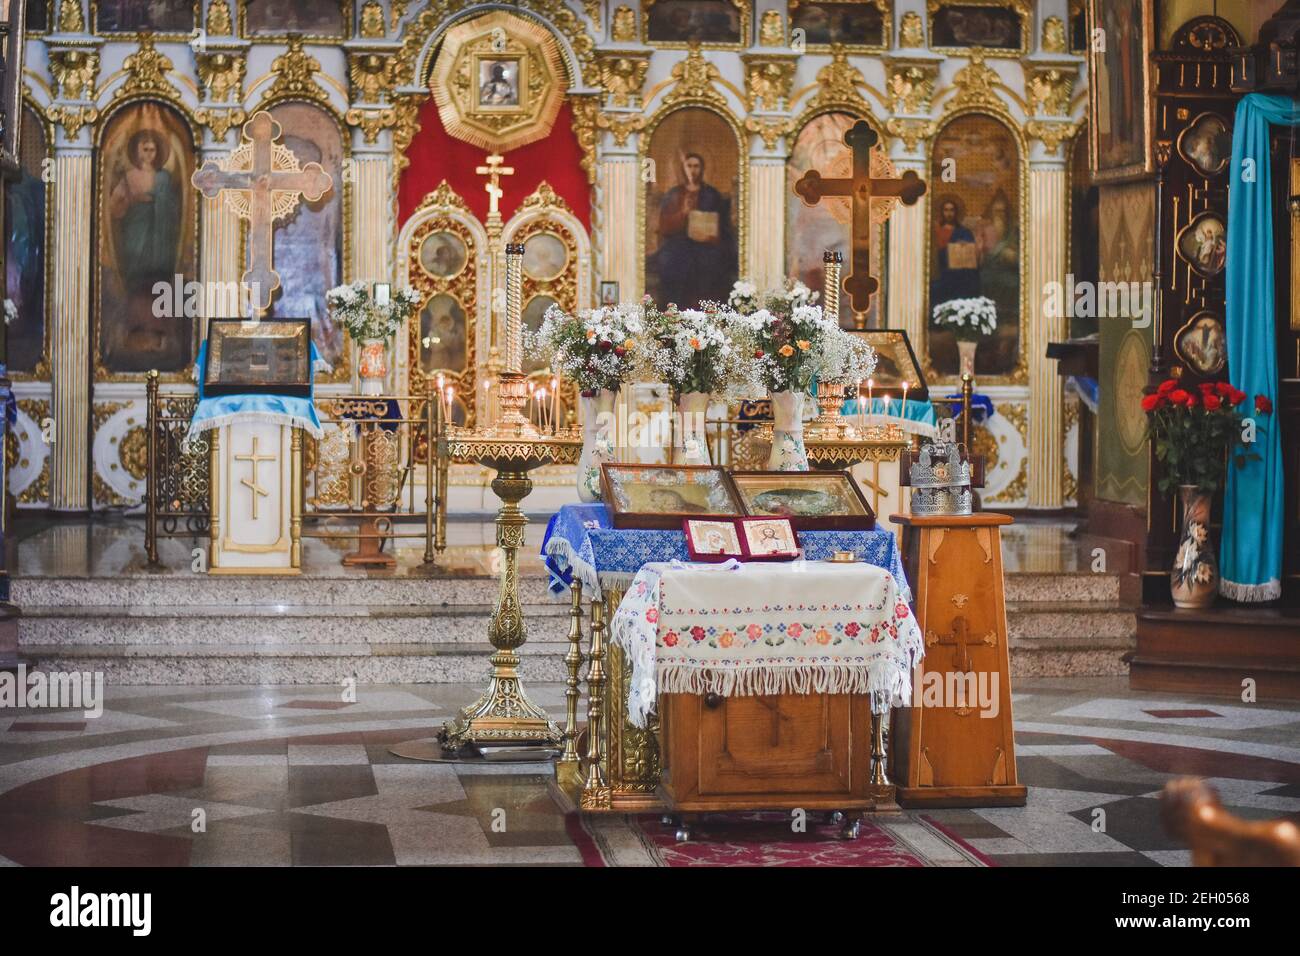 Chiesa ortodossa all'interno. L'interno della chiesa. Foto Stock